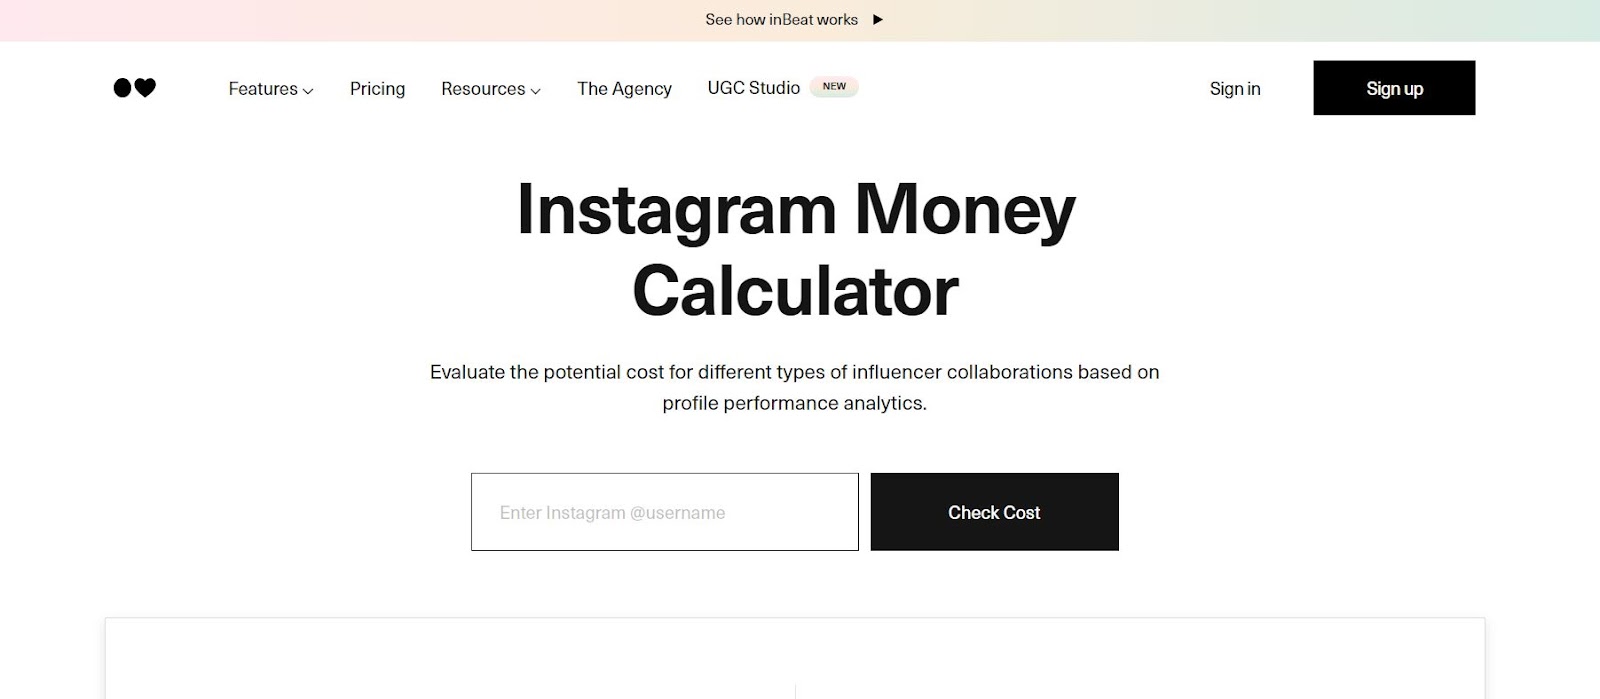 InBeat: Instagram Money Calculator